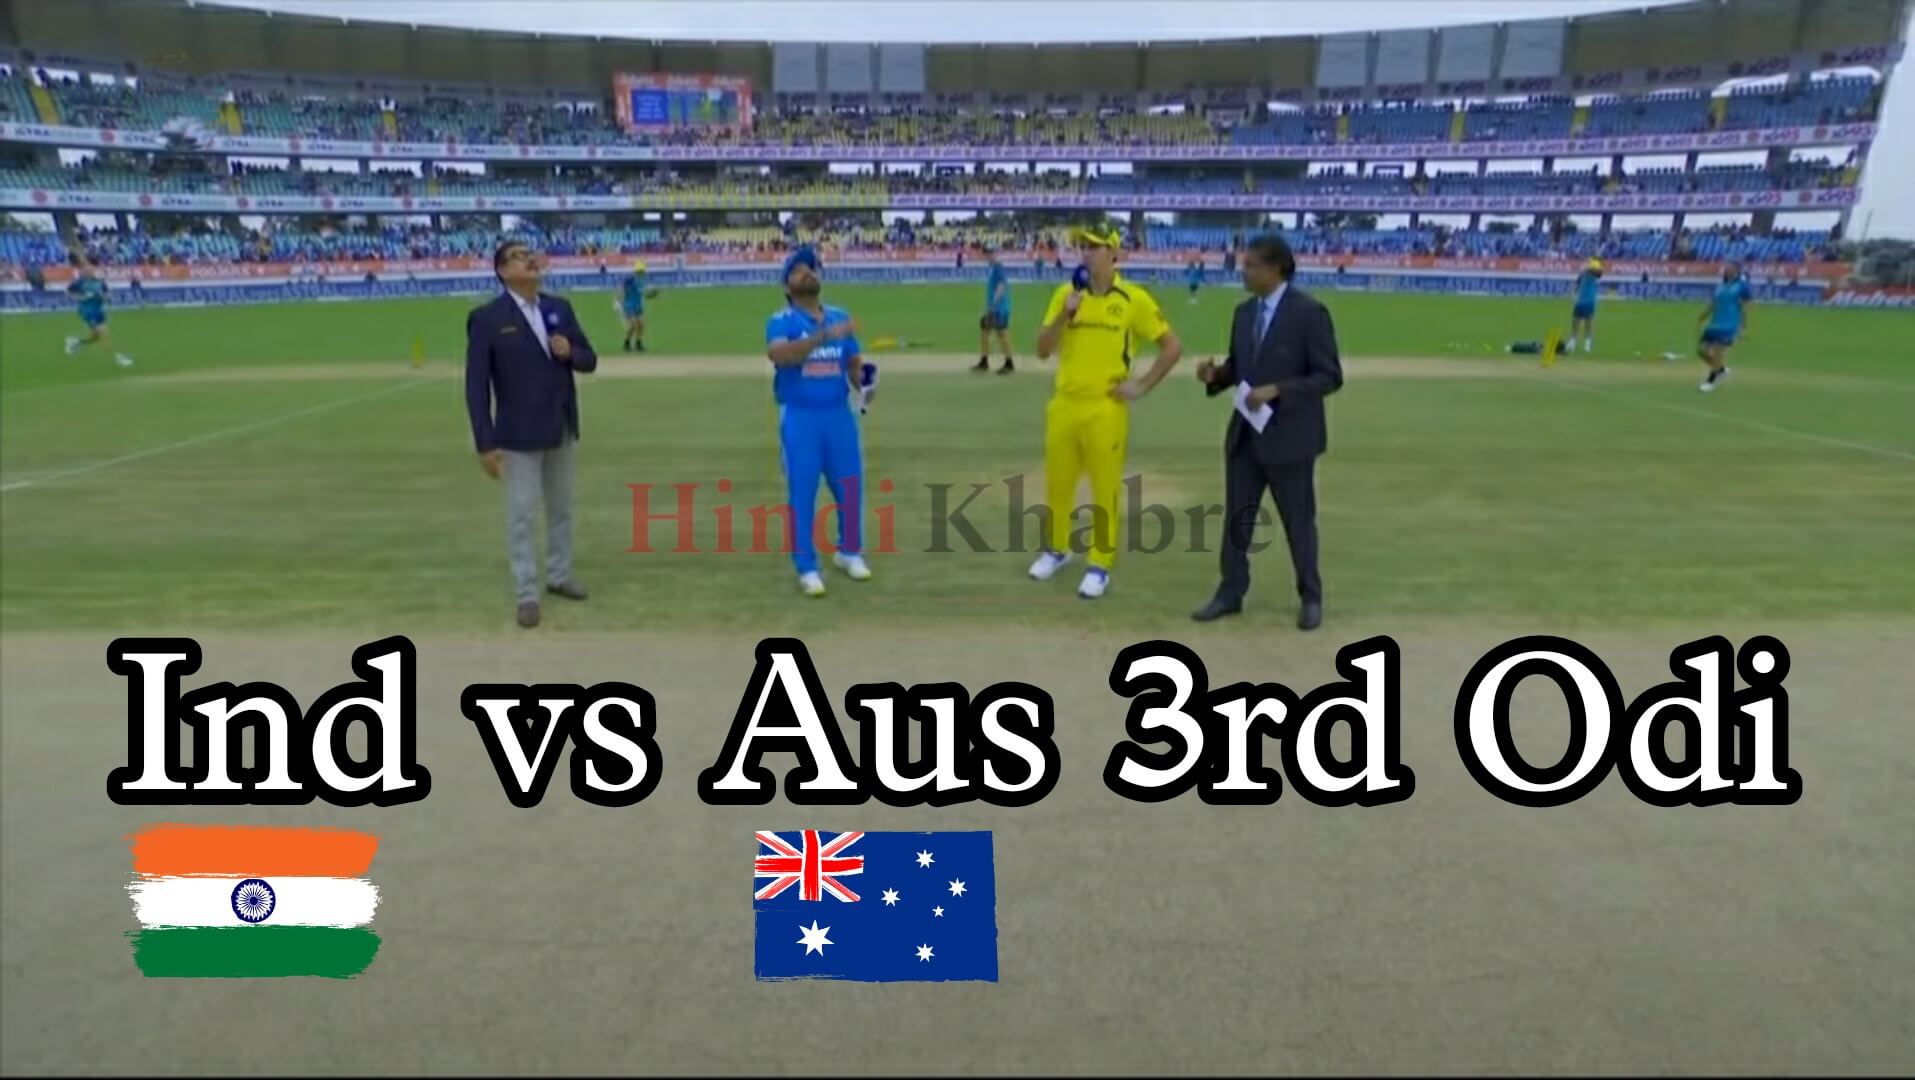 Ind vs Aus